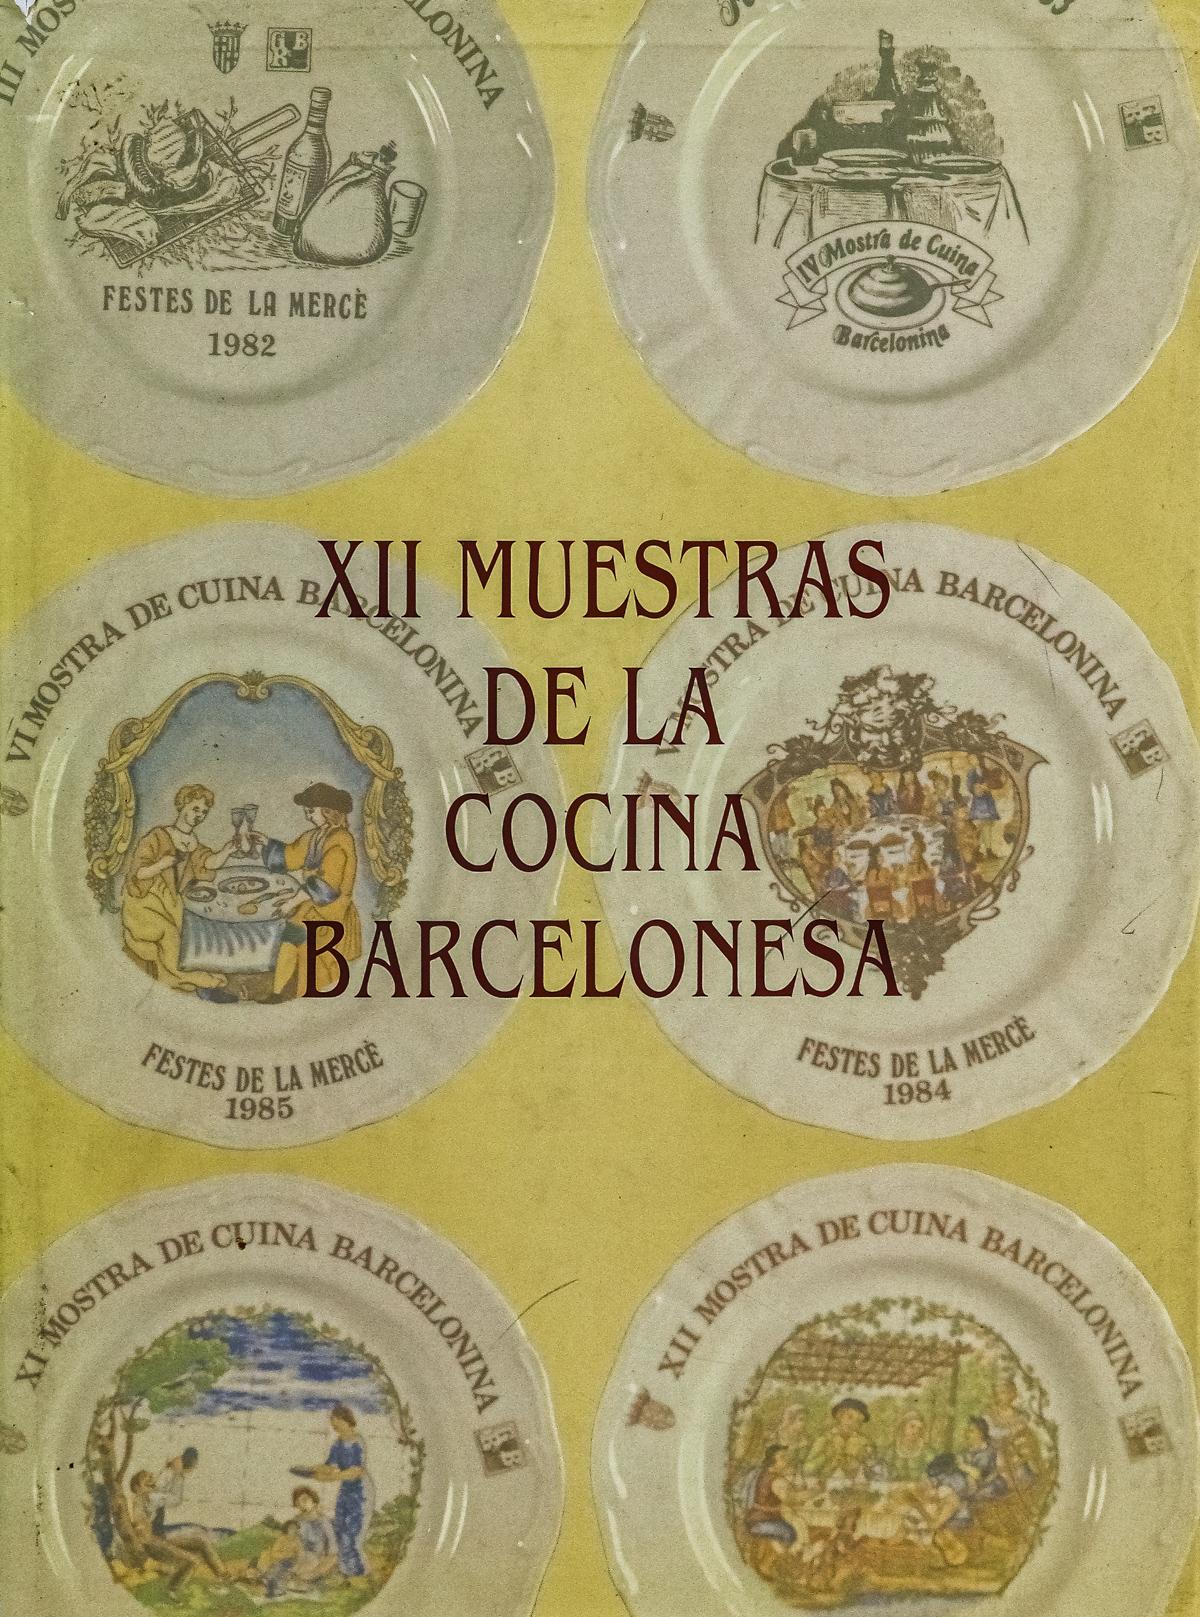 "XII MUESTRAS DE LA COCINA BARCELONESA"